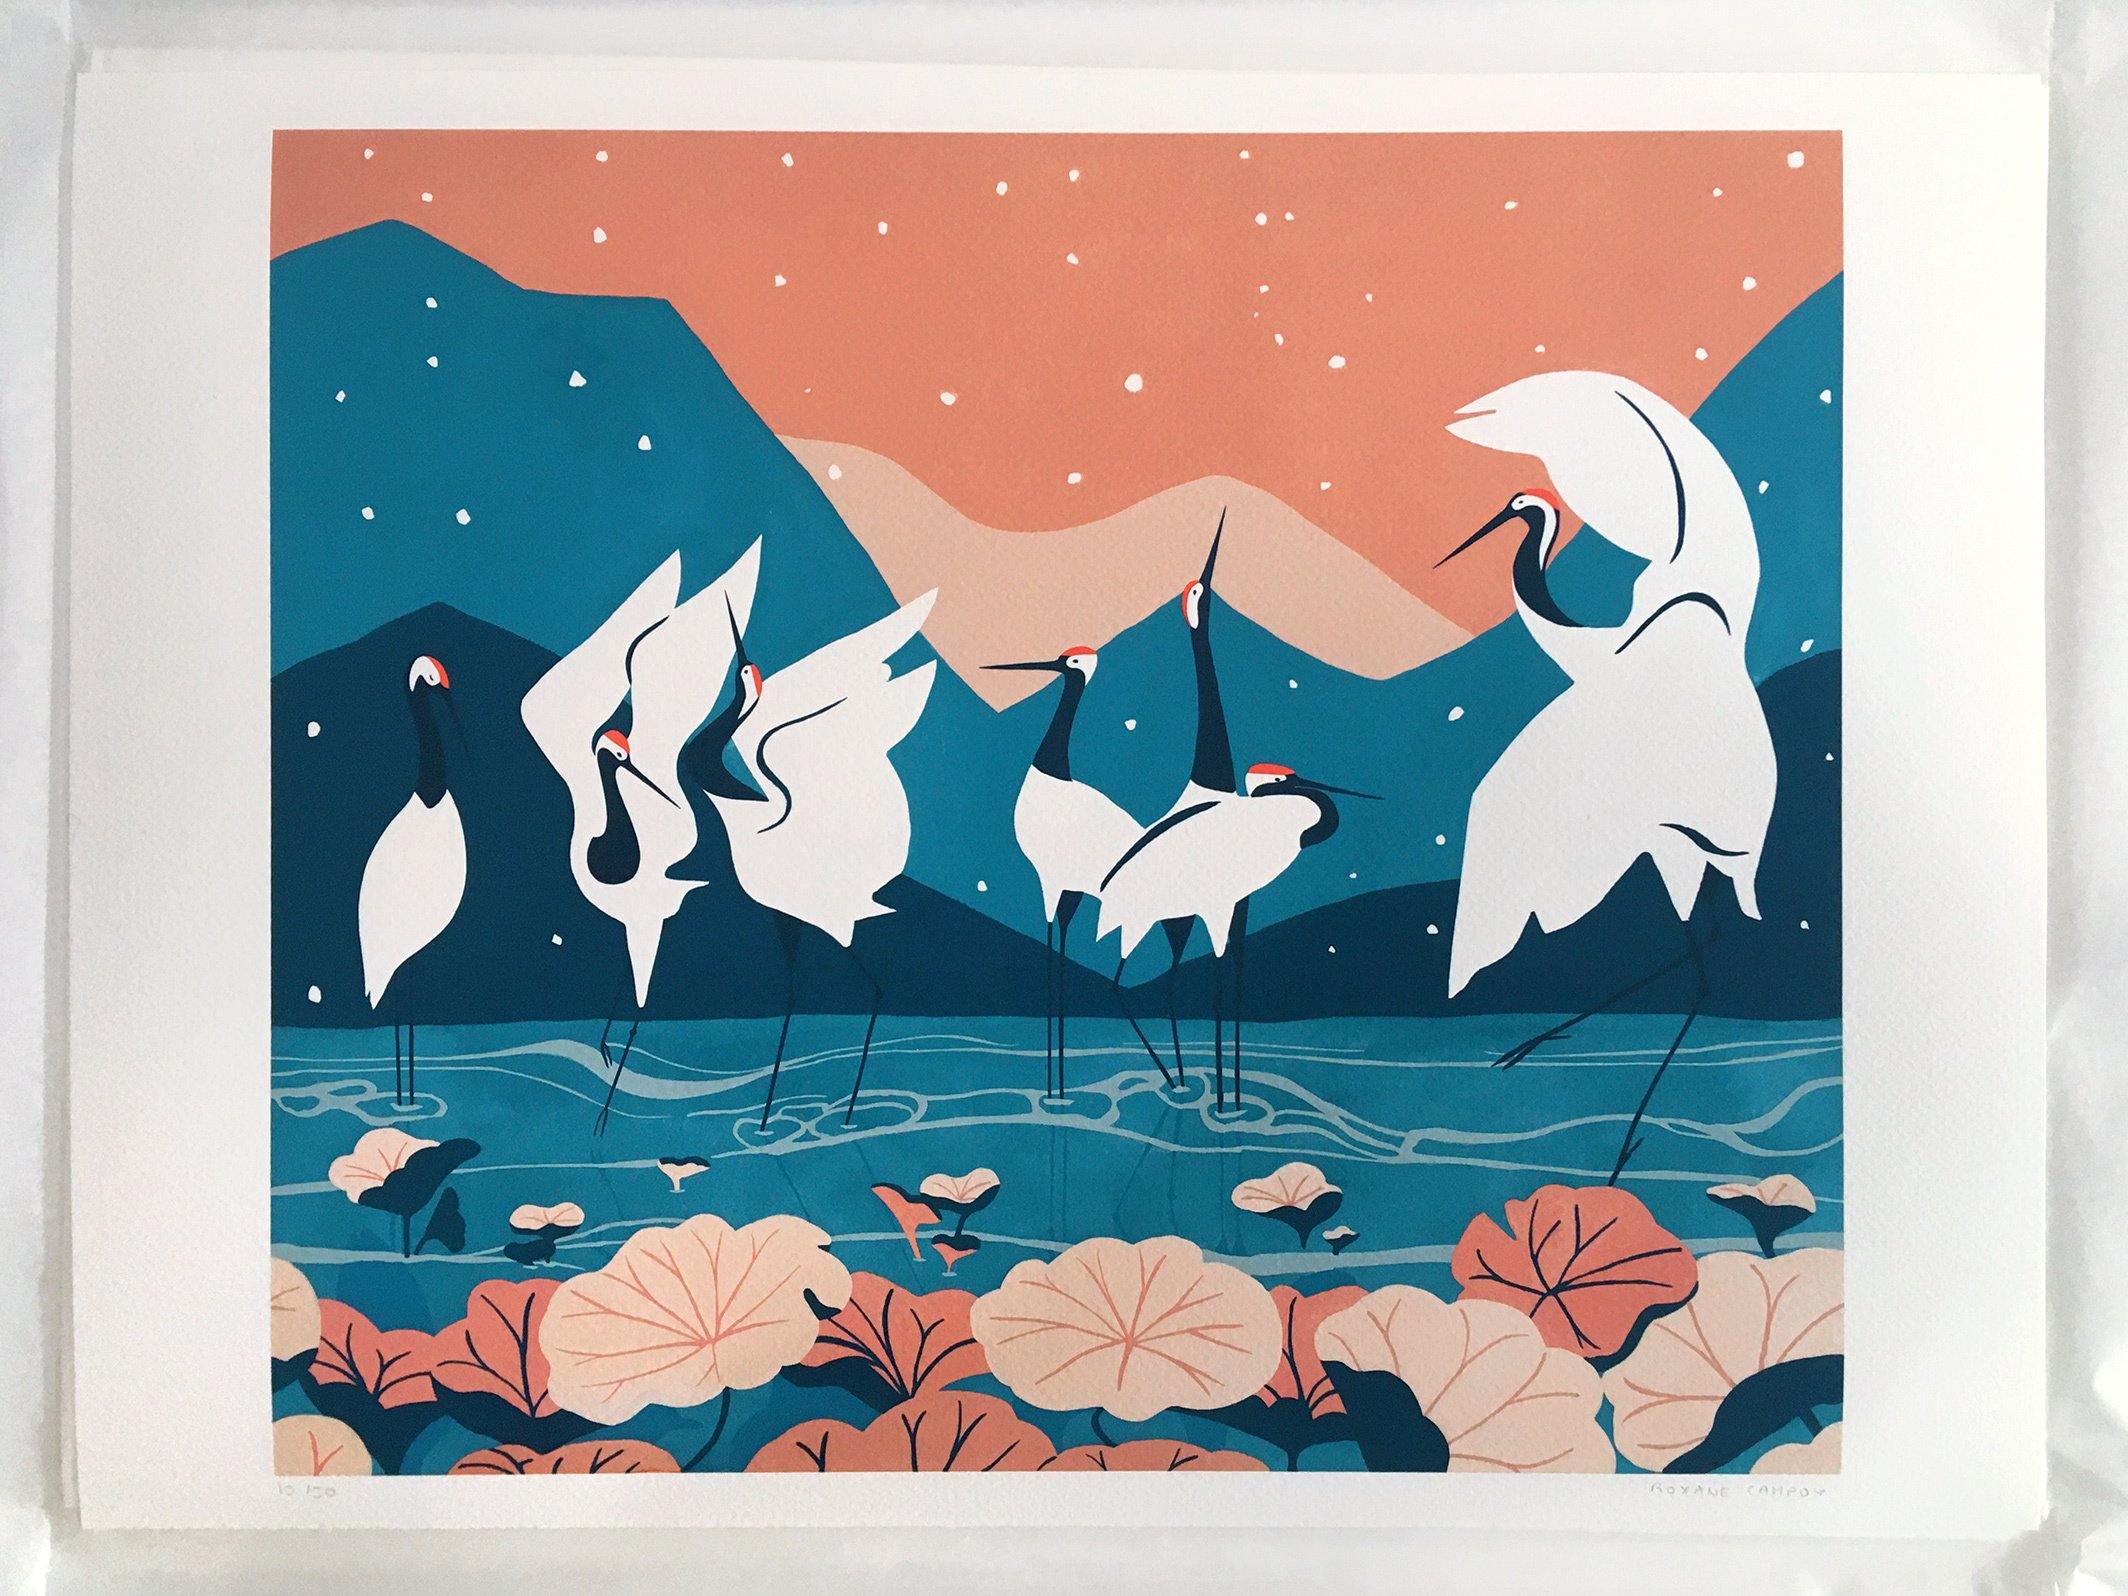 Photographie du tirage d'art de l'affiche colorée bleu et corail, dessinée par Roxane Campoy illustrant des grues japonaises.